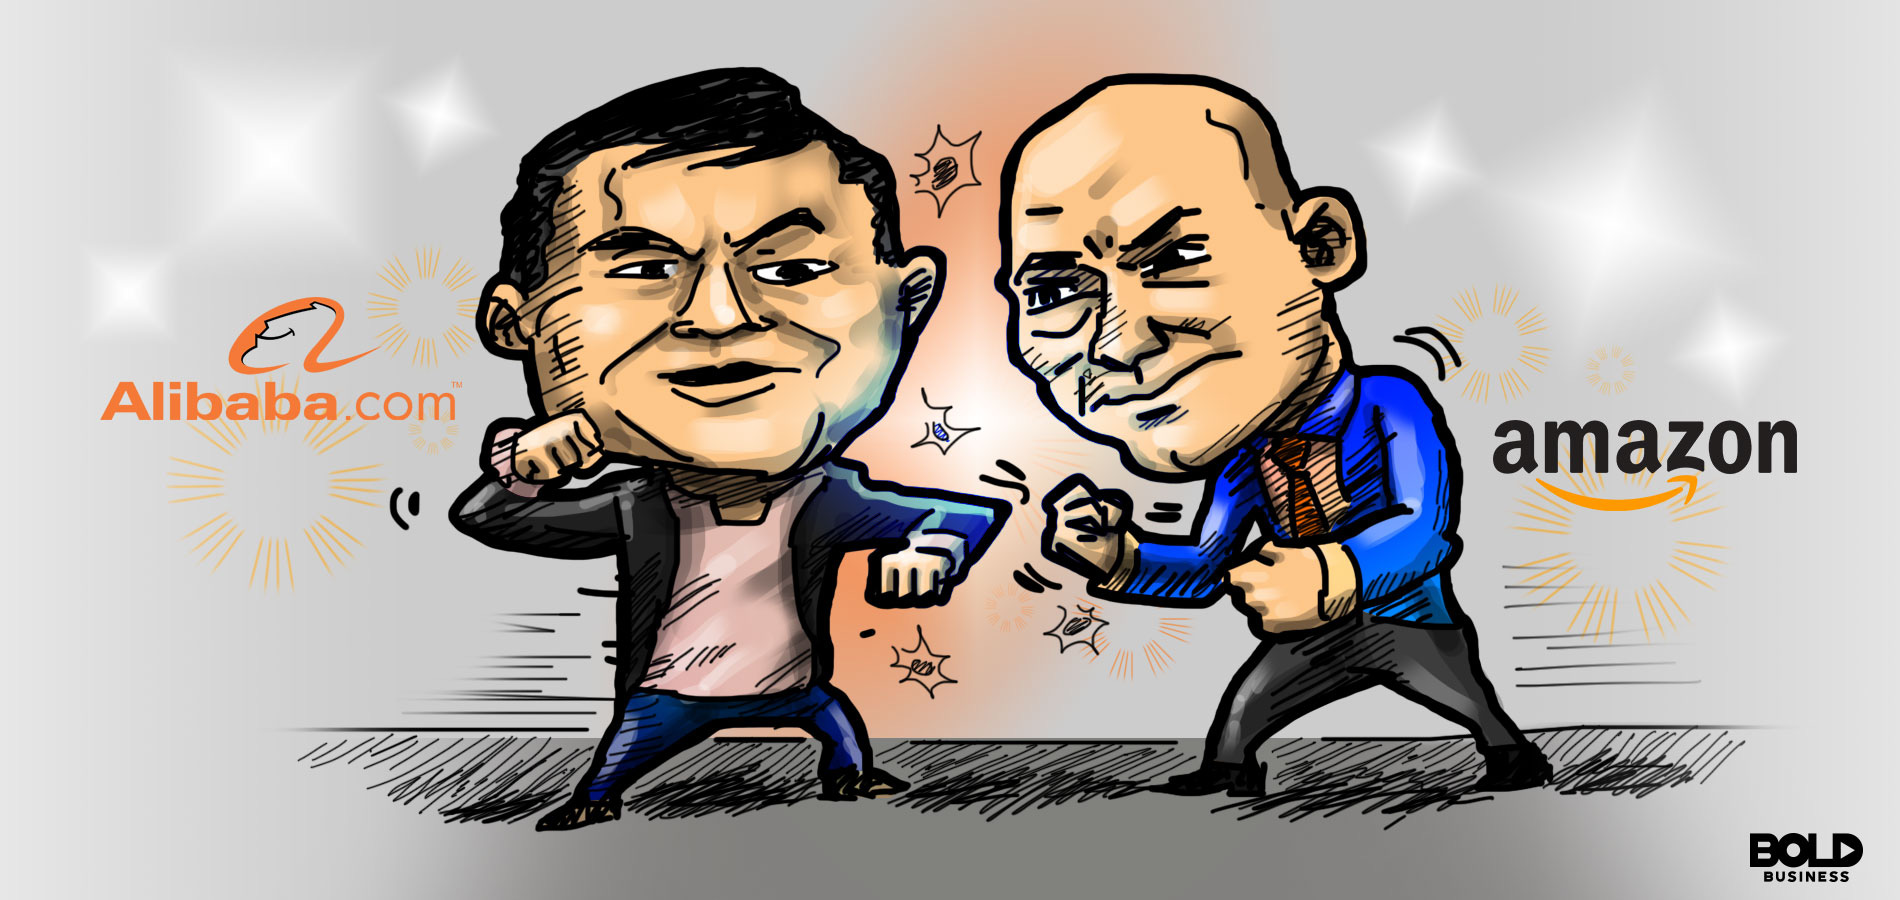 Alibaba: Dẫn đầu Trung Quốc với tiềm lực lớn, tham vọng sánh ngang với  Amazon nhưng phải đối mặt với một thế lực đáng gờm ở ngay trong nước